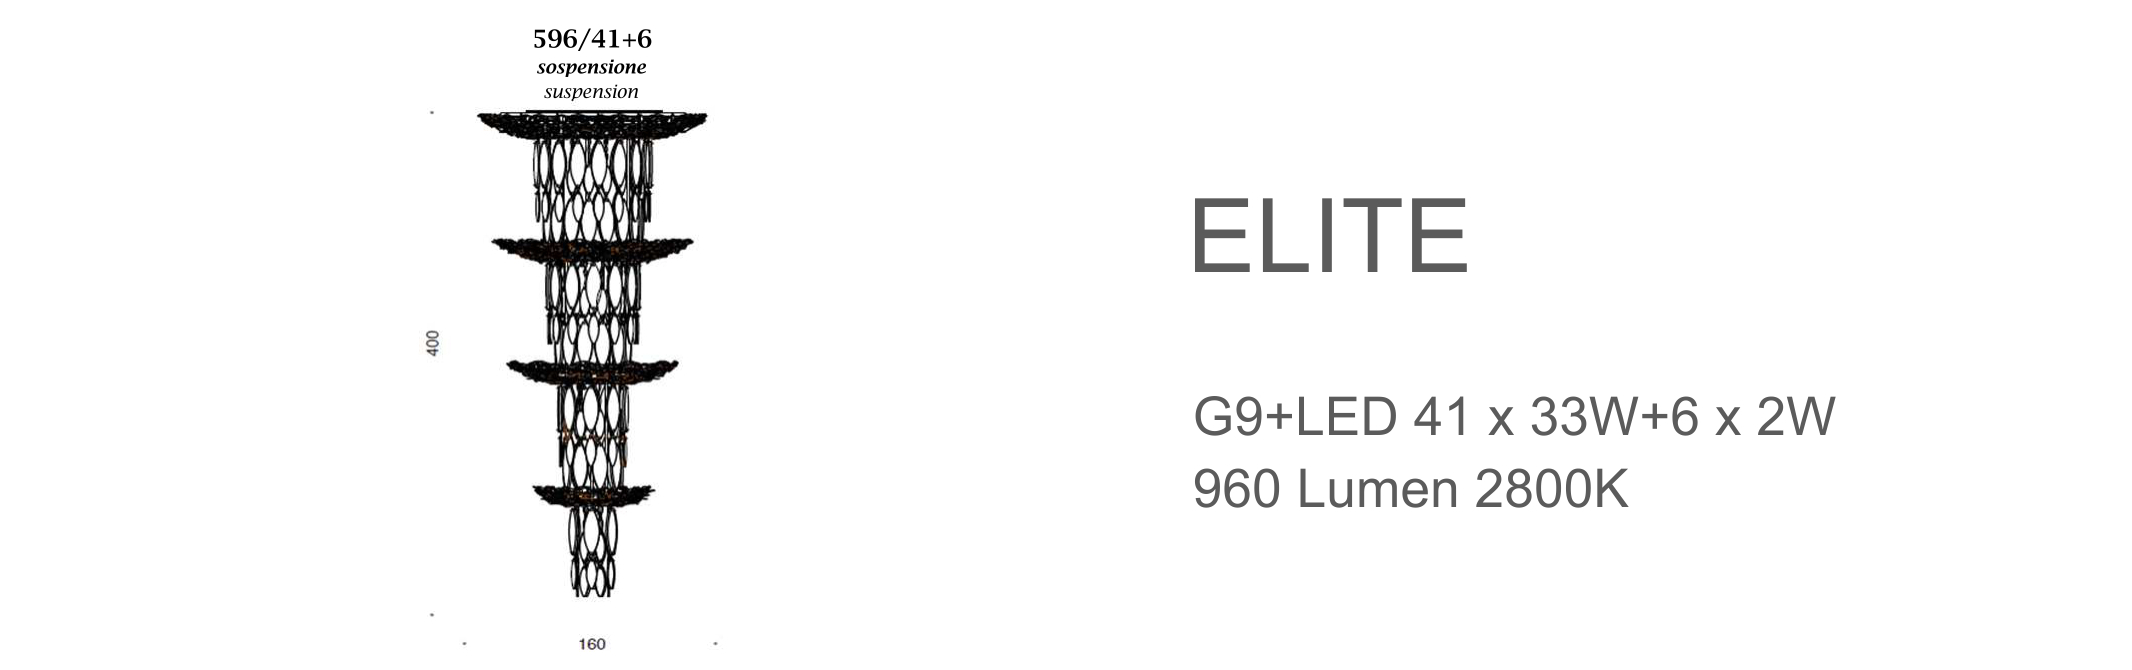 Elite 596/41+6